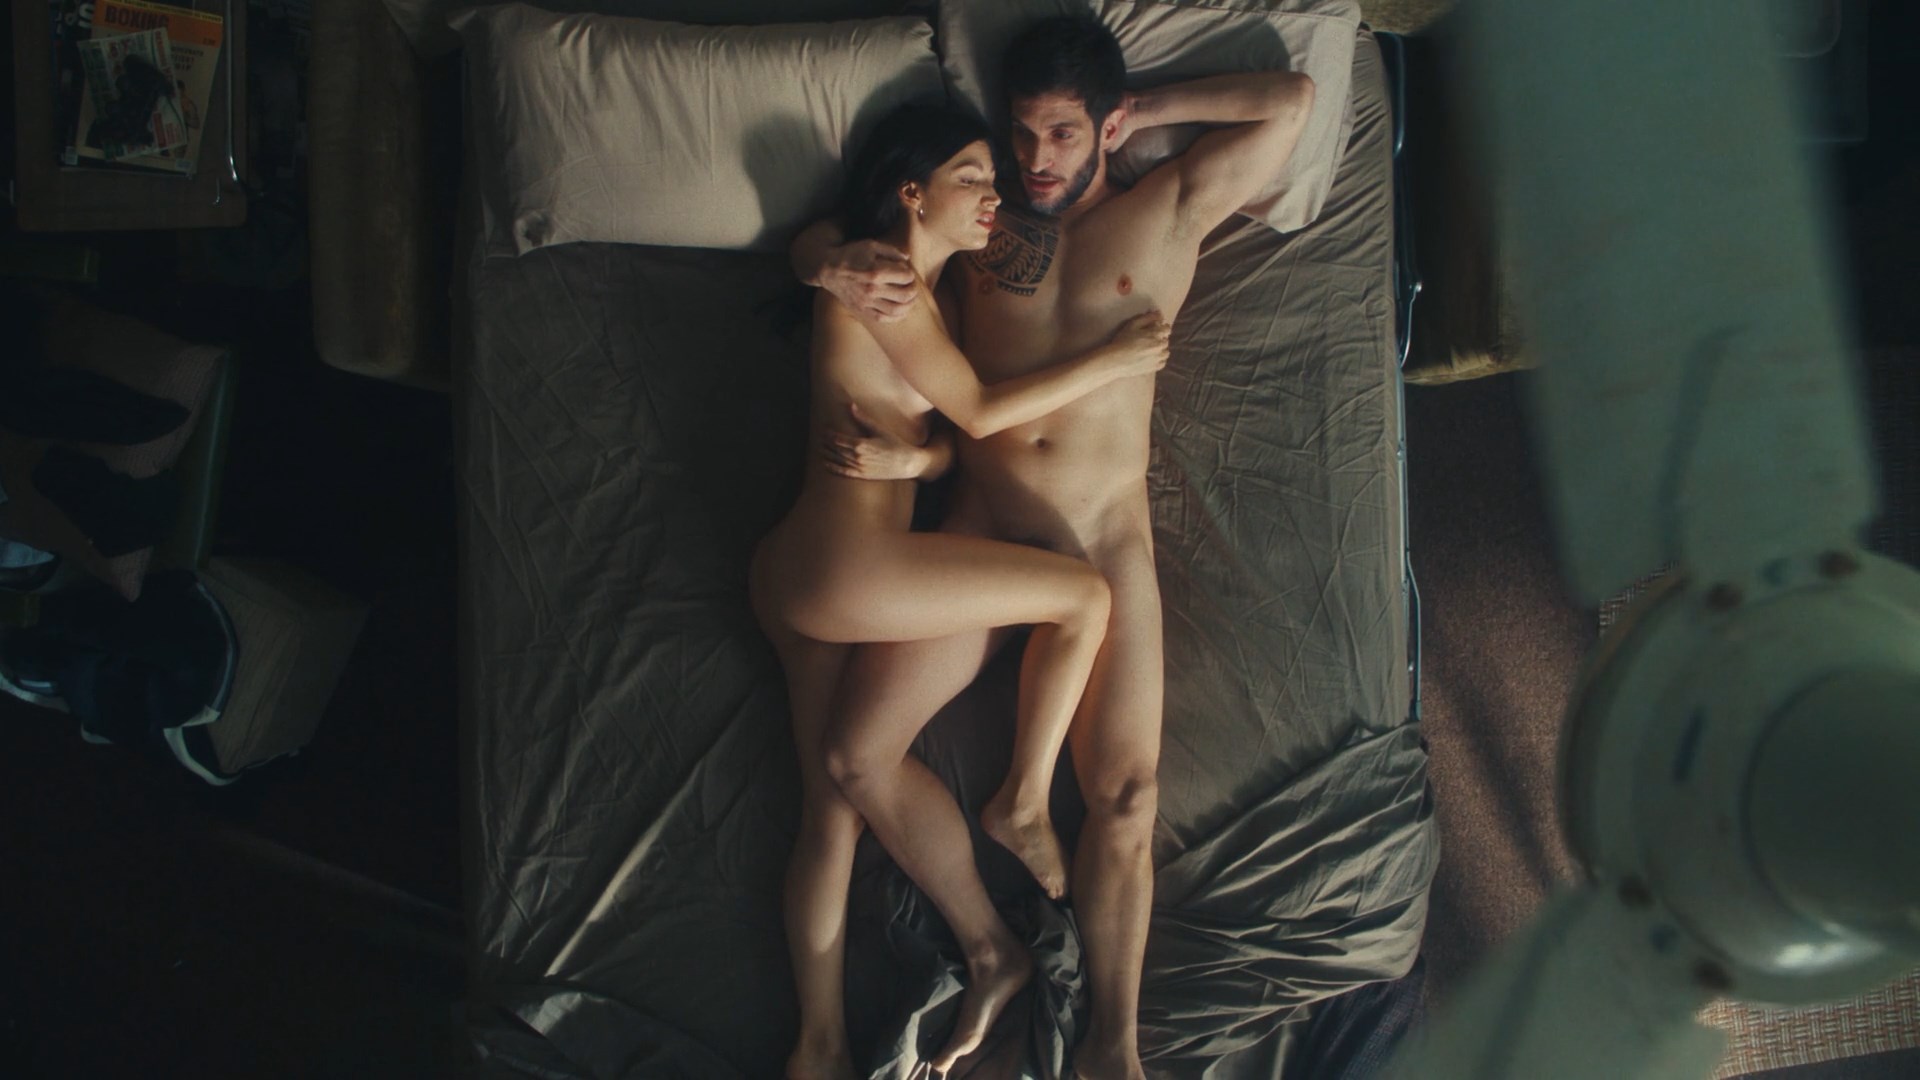 El Cuerpo En Llamas Nude Scenes Celebs Nude Video Nudecelebvideo Net